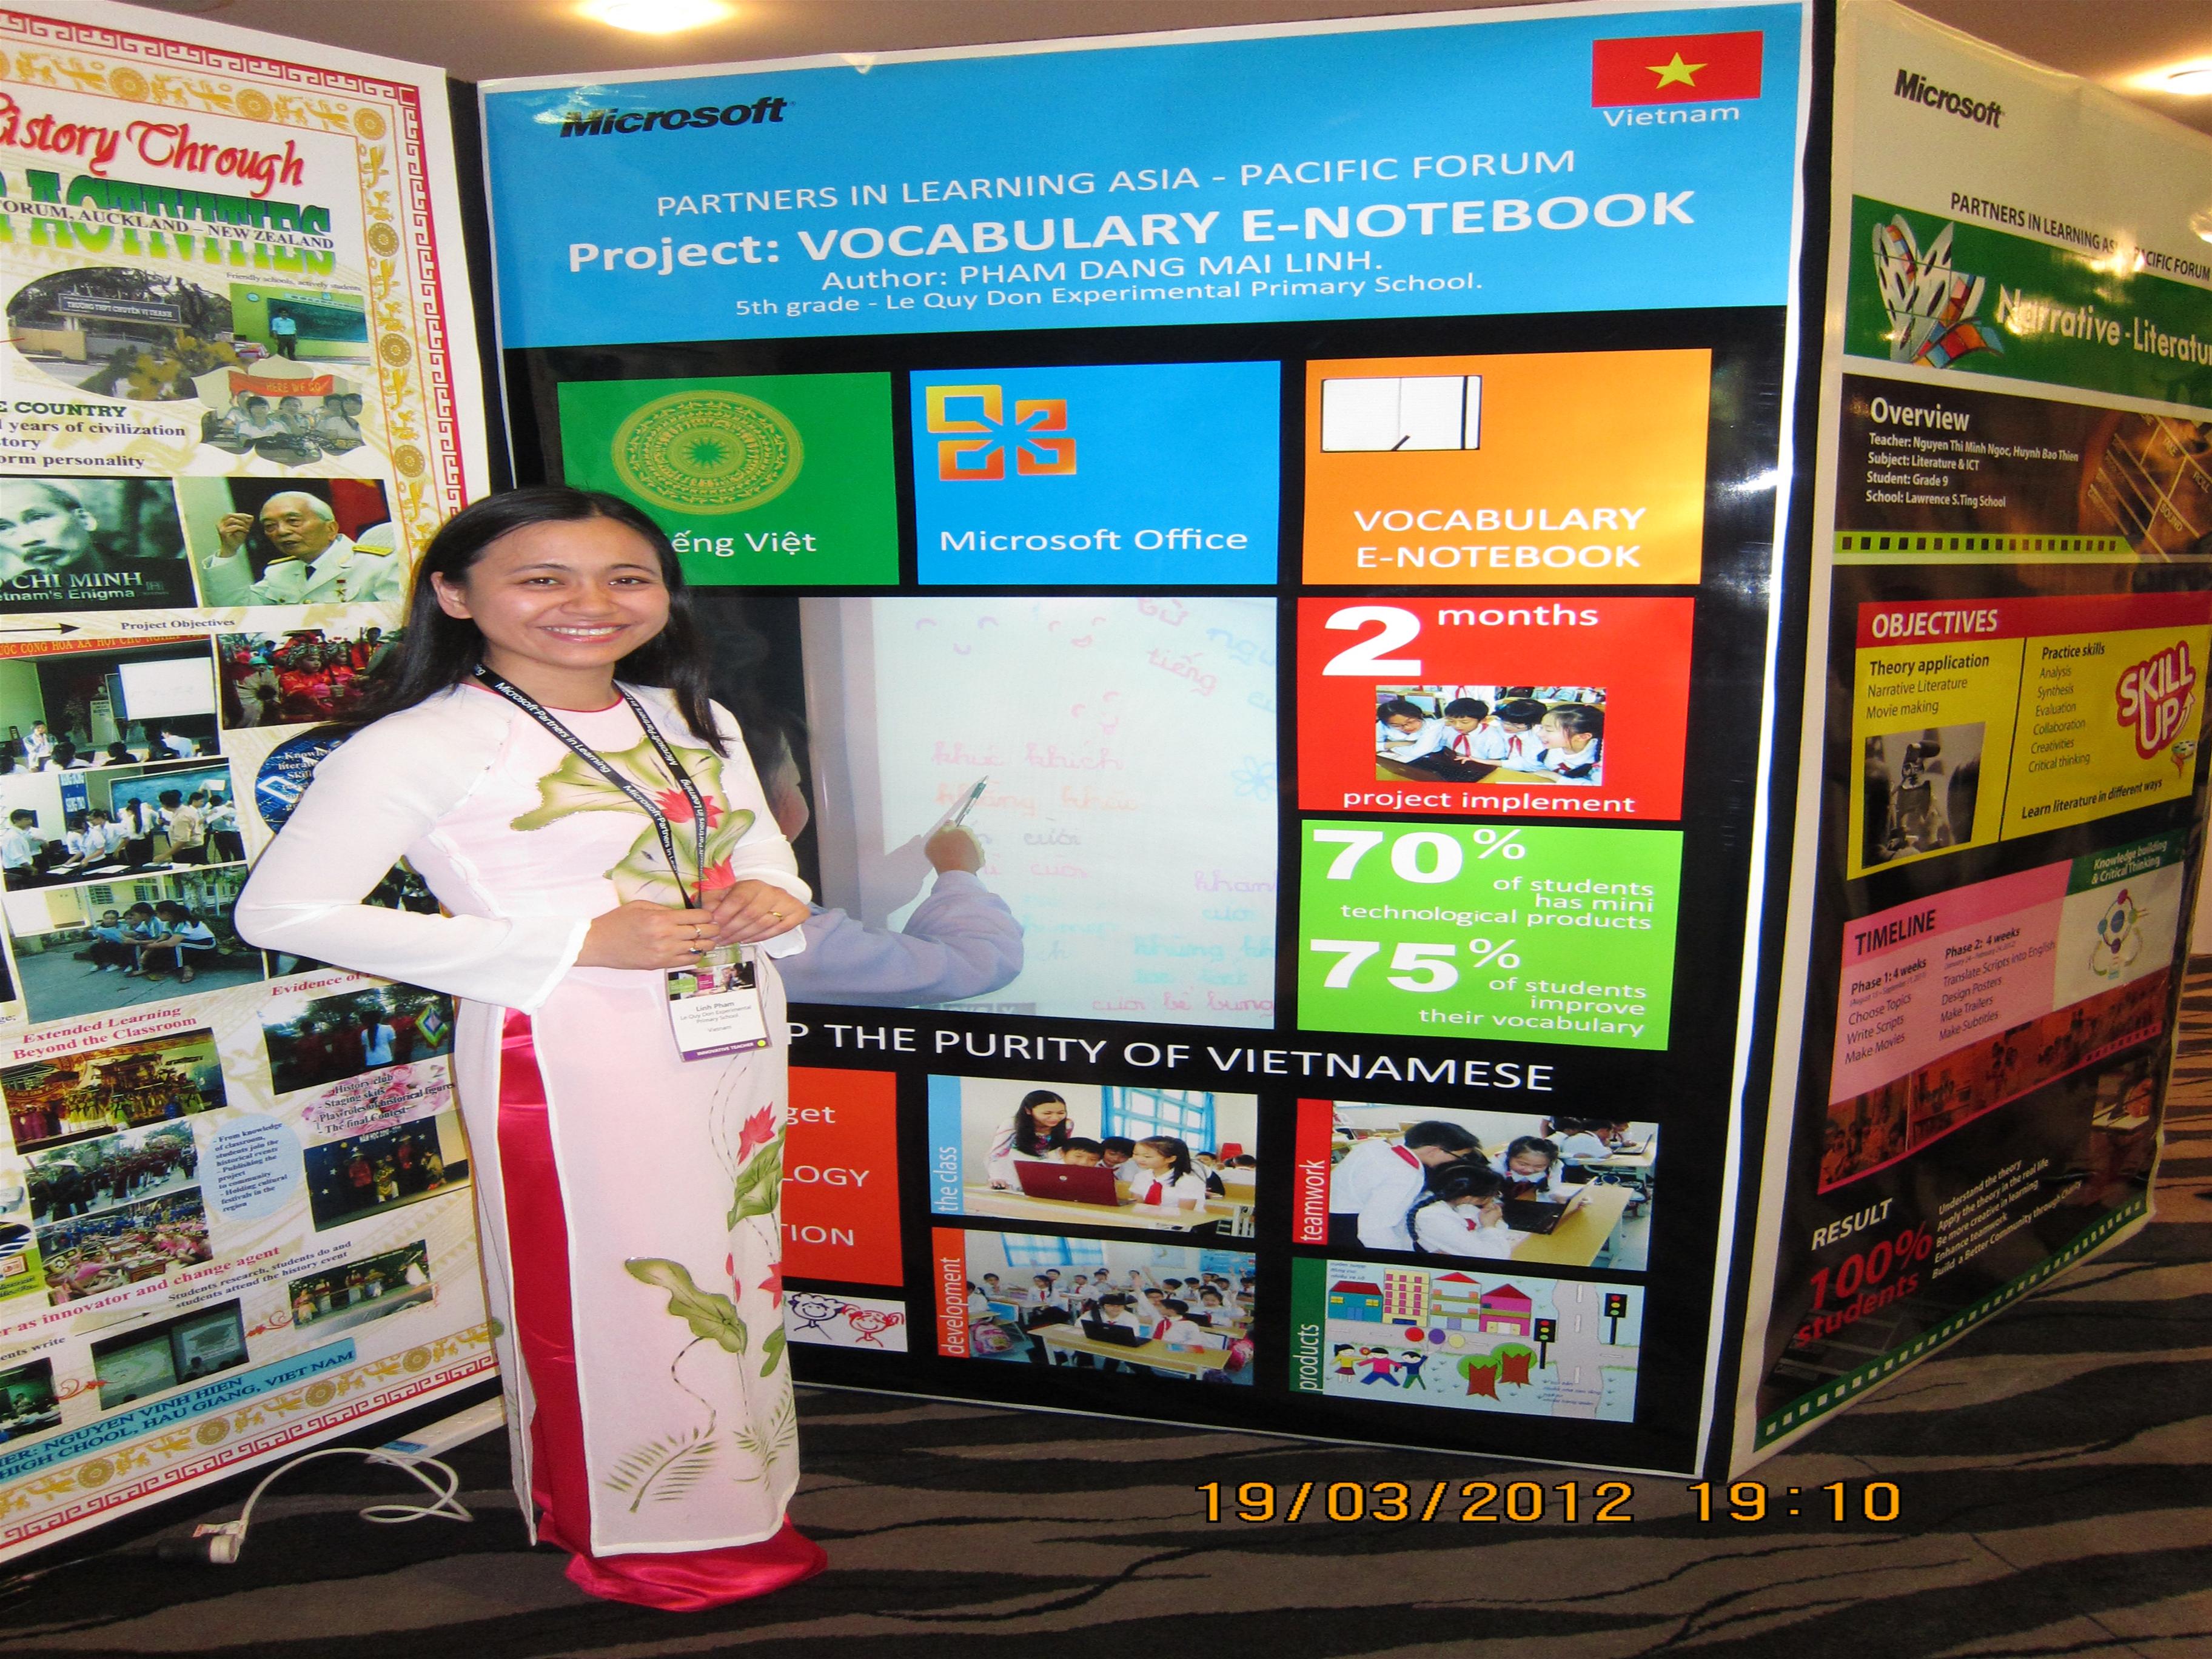 Microsoft mời cô Phạm Đặng Mai Linh trường Tiểu học thực nghiệm Lê Quý Đôn - Đà Lạt tham gia diễn đàn giáo viên sáng tạo Châu Á - Thái Bình Dương (Microsoft Partners in Learning Asia - Pacific 2012)